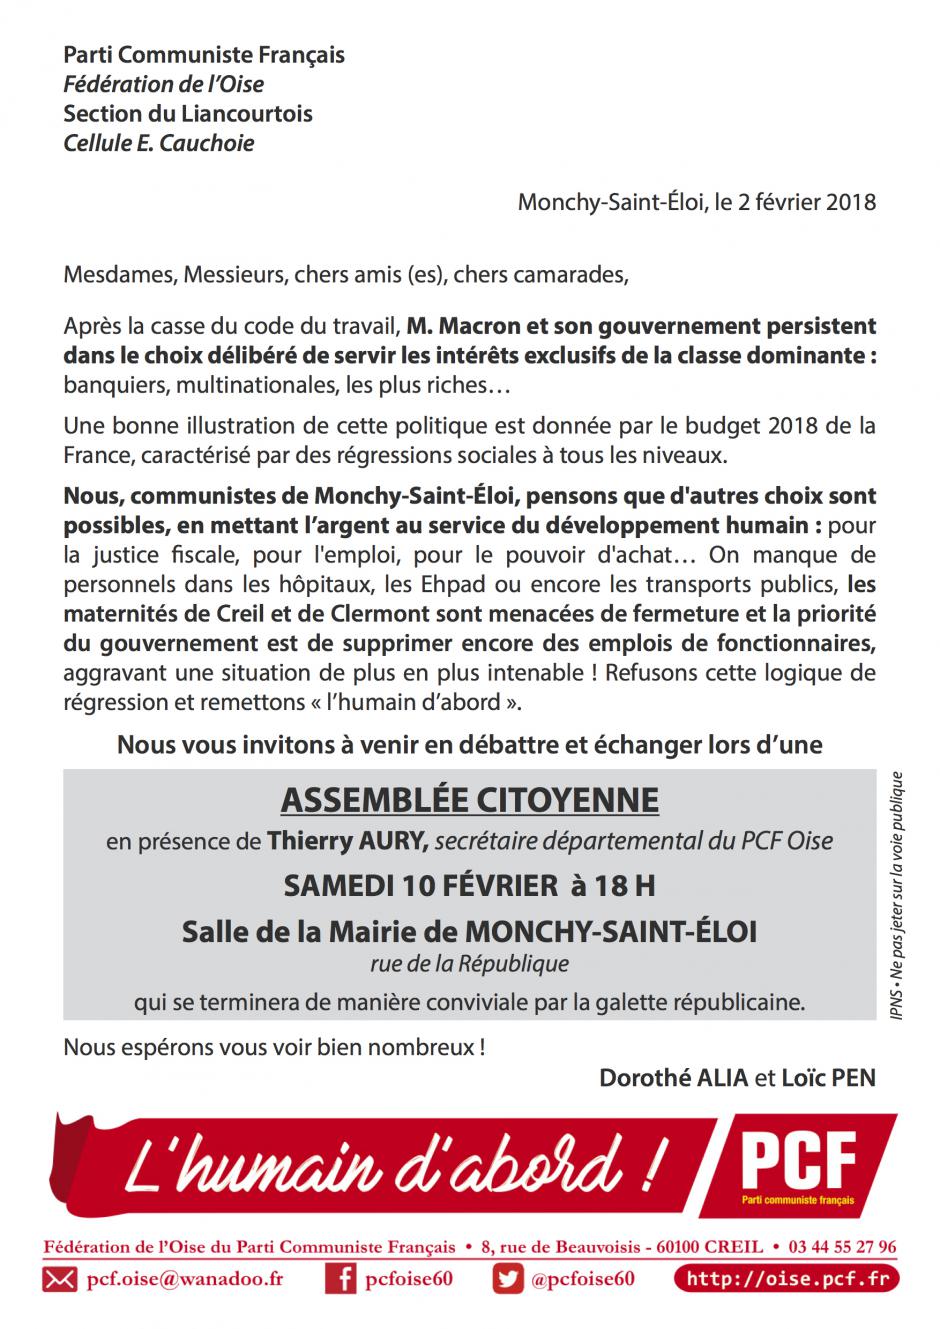 Invitation « Assemblée citoyenne à l'initiative des communistes de Monchy-Saint-Éloi » - Section PCF de Clermont-Liancourt, 10 février 2018